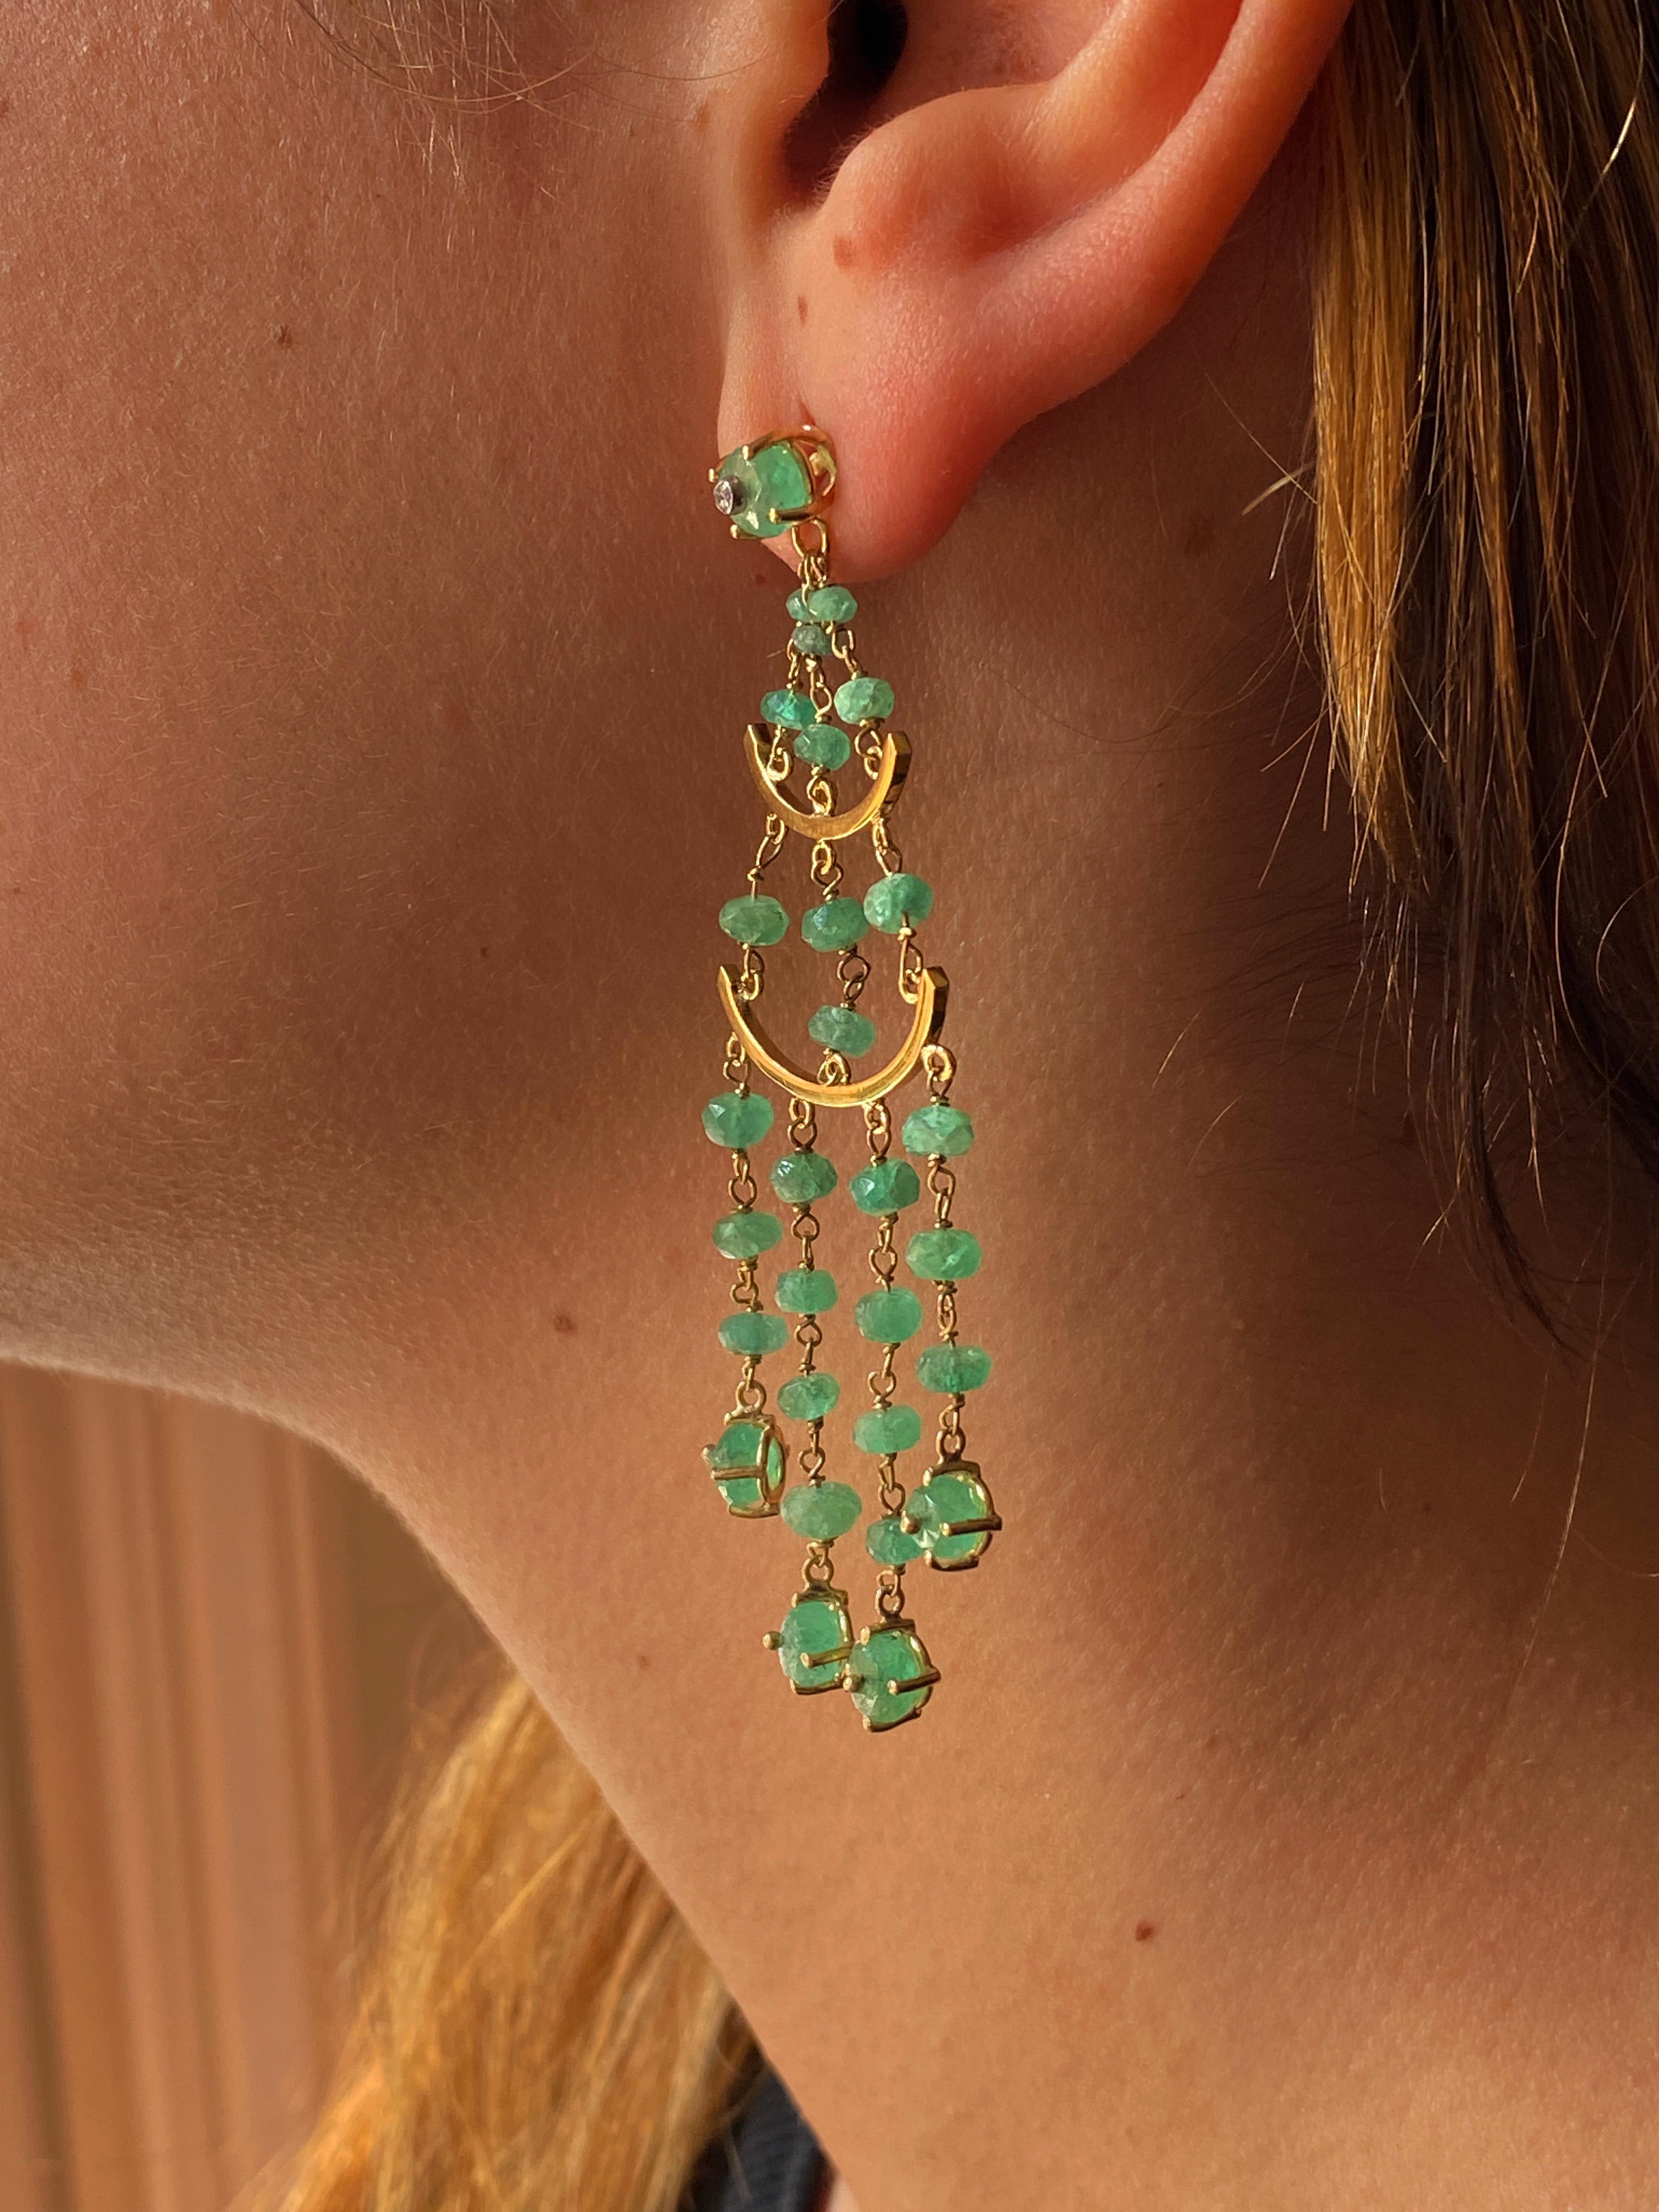 Rossella Ugolinis exquisite, handgefertigte Chandelier-Smaragd-Ohrringe sind ein Beweis für die Schönheit italienischer Handwerkskunst. Diese bezaubernden Ohrringe bestehen aus einer Kaskade von 60 Smaragdperlen und Diamanten, die sorgfältig in 18